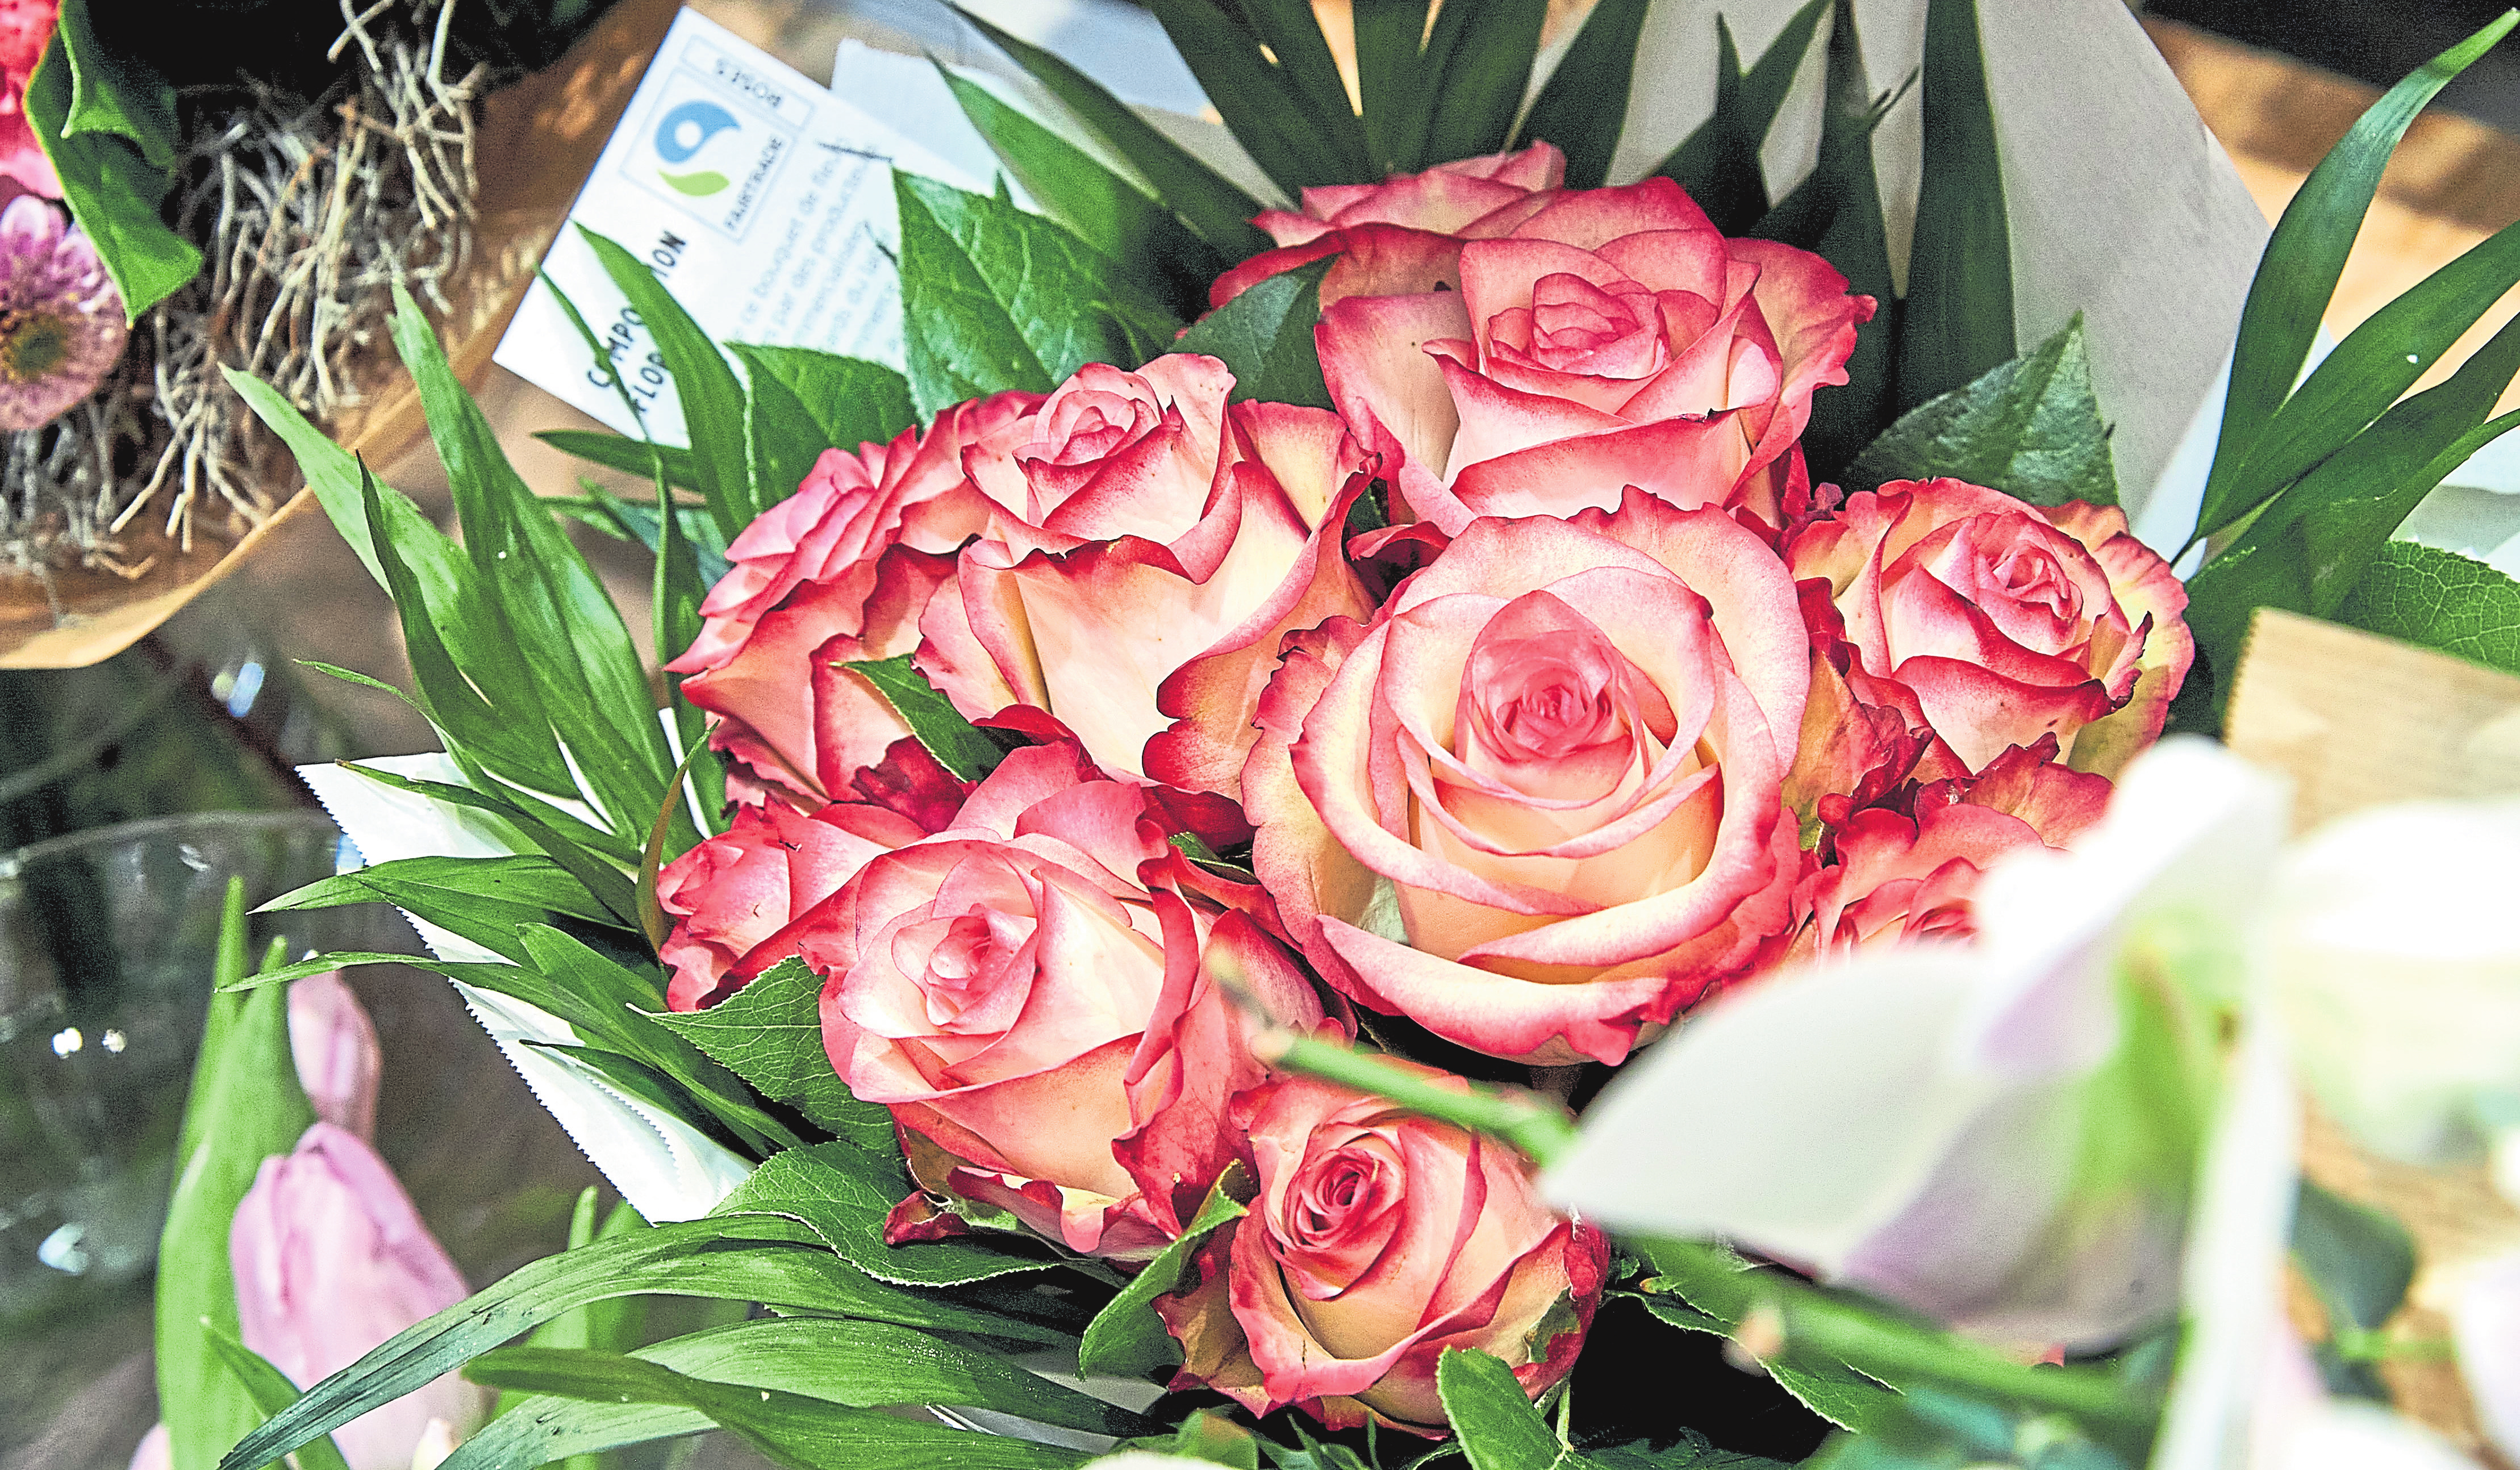 Impossible de passer dans un comptoir à fleurs Cactus sans repérer ces ravissantes roses du Kenya, autre filière du commerce équitable Fairtrade.